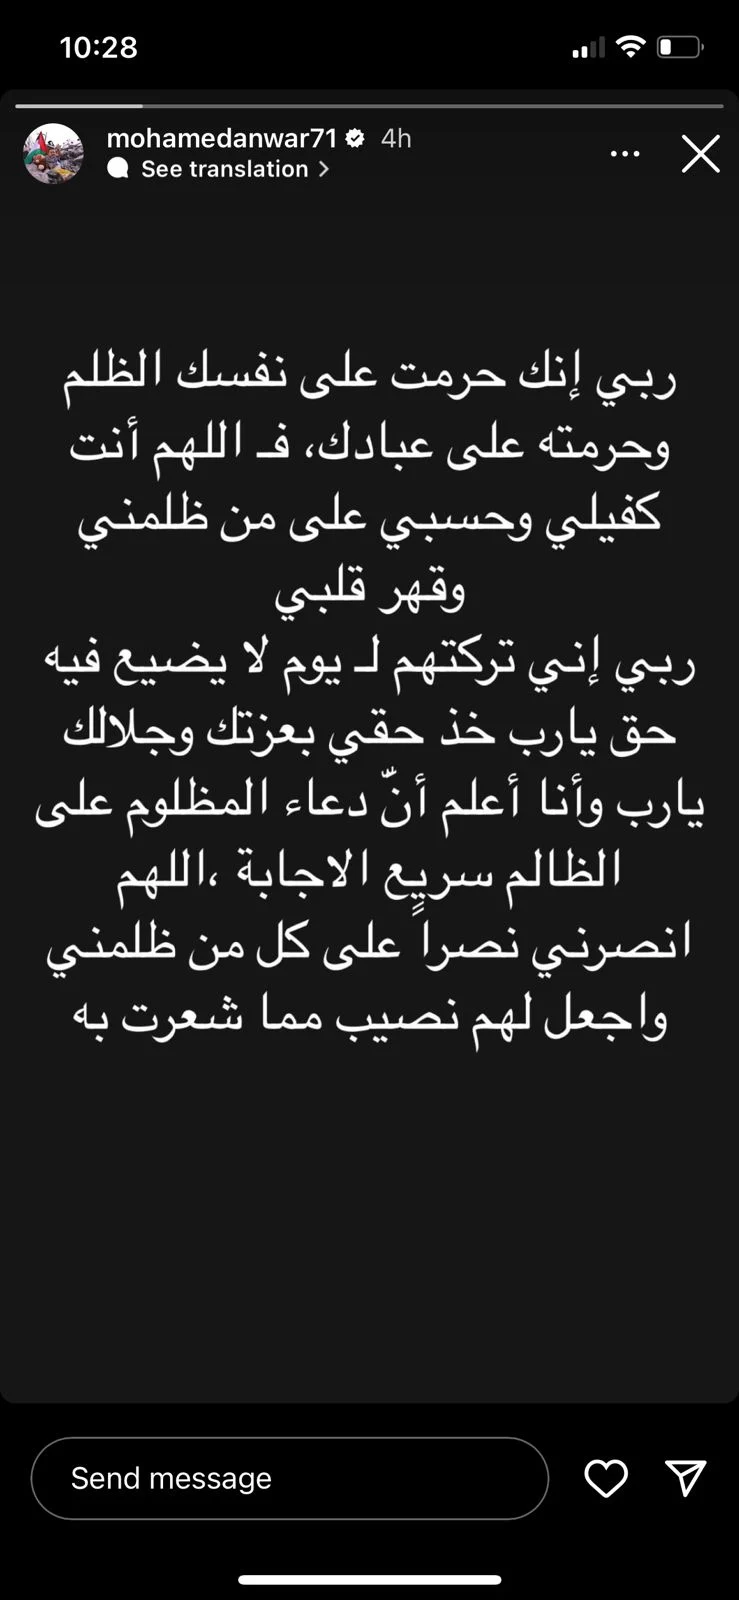 بعد تعرضه للهجوم.. أول تعليق من محمد أنور على اختياره بديلا لـ سلام بموسم الرياض 1